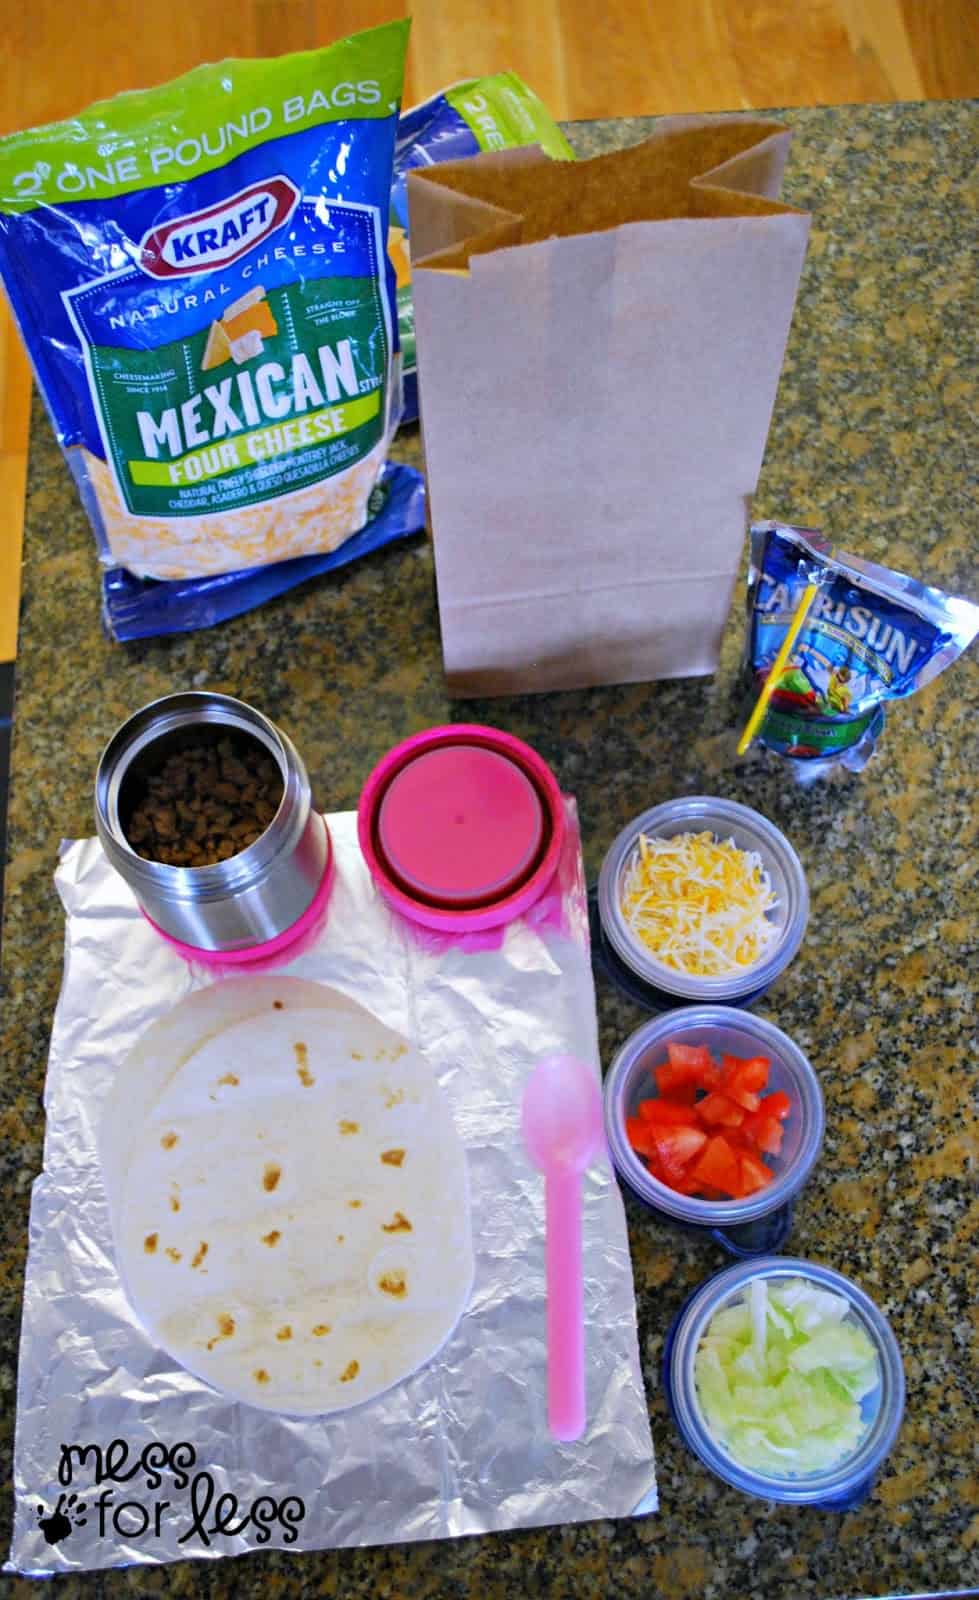 Build your own tacos #ChooseSmart #shop #cbias